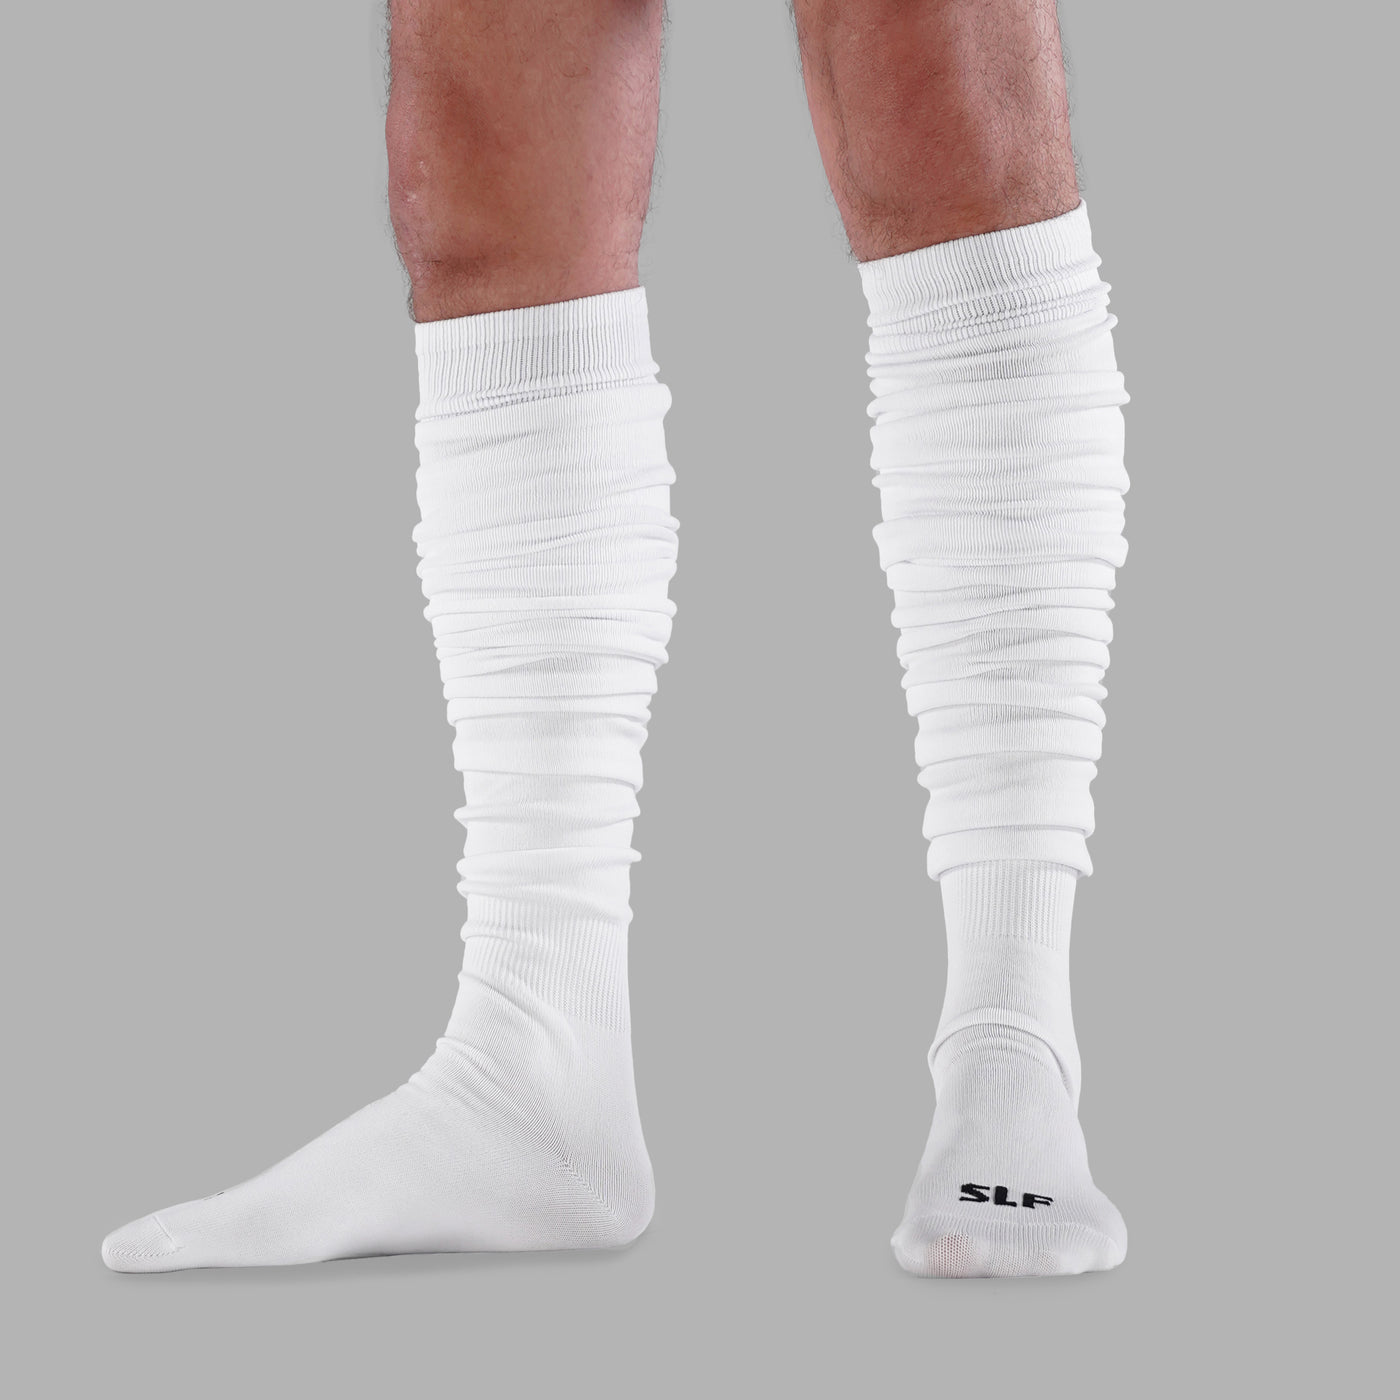 Basic White Long Scrunchie Socks